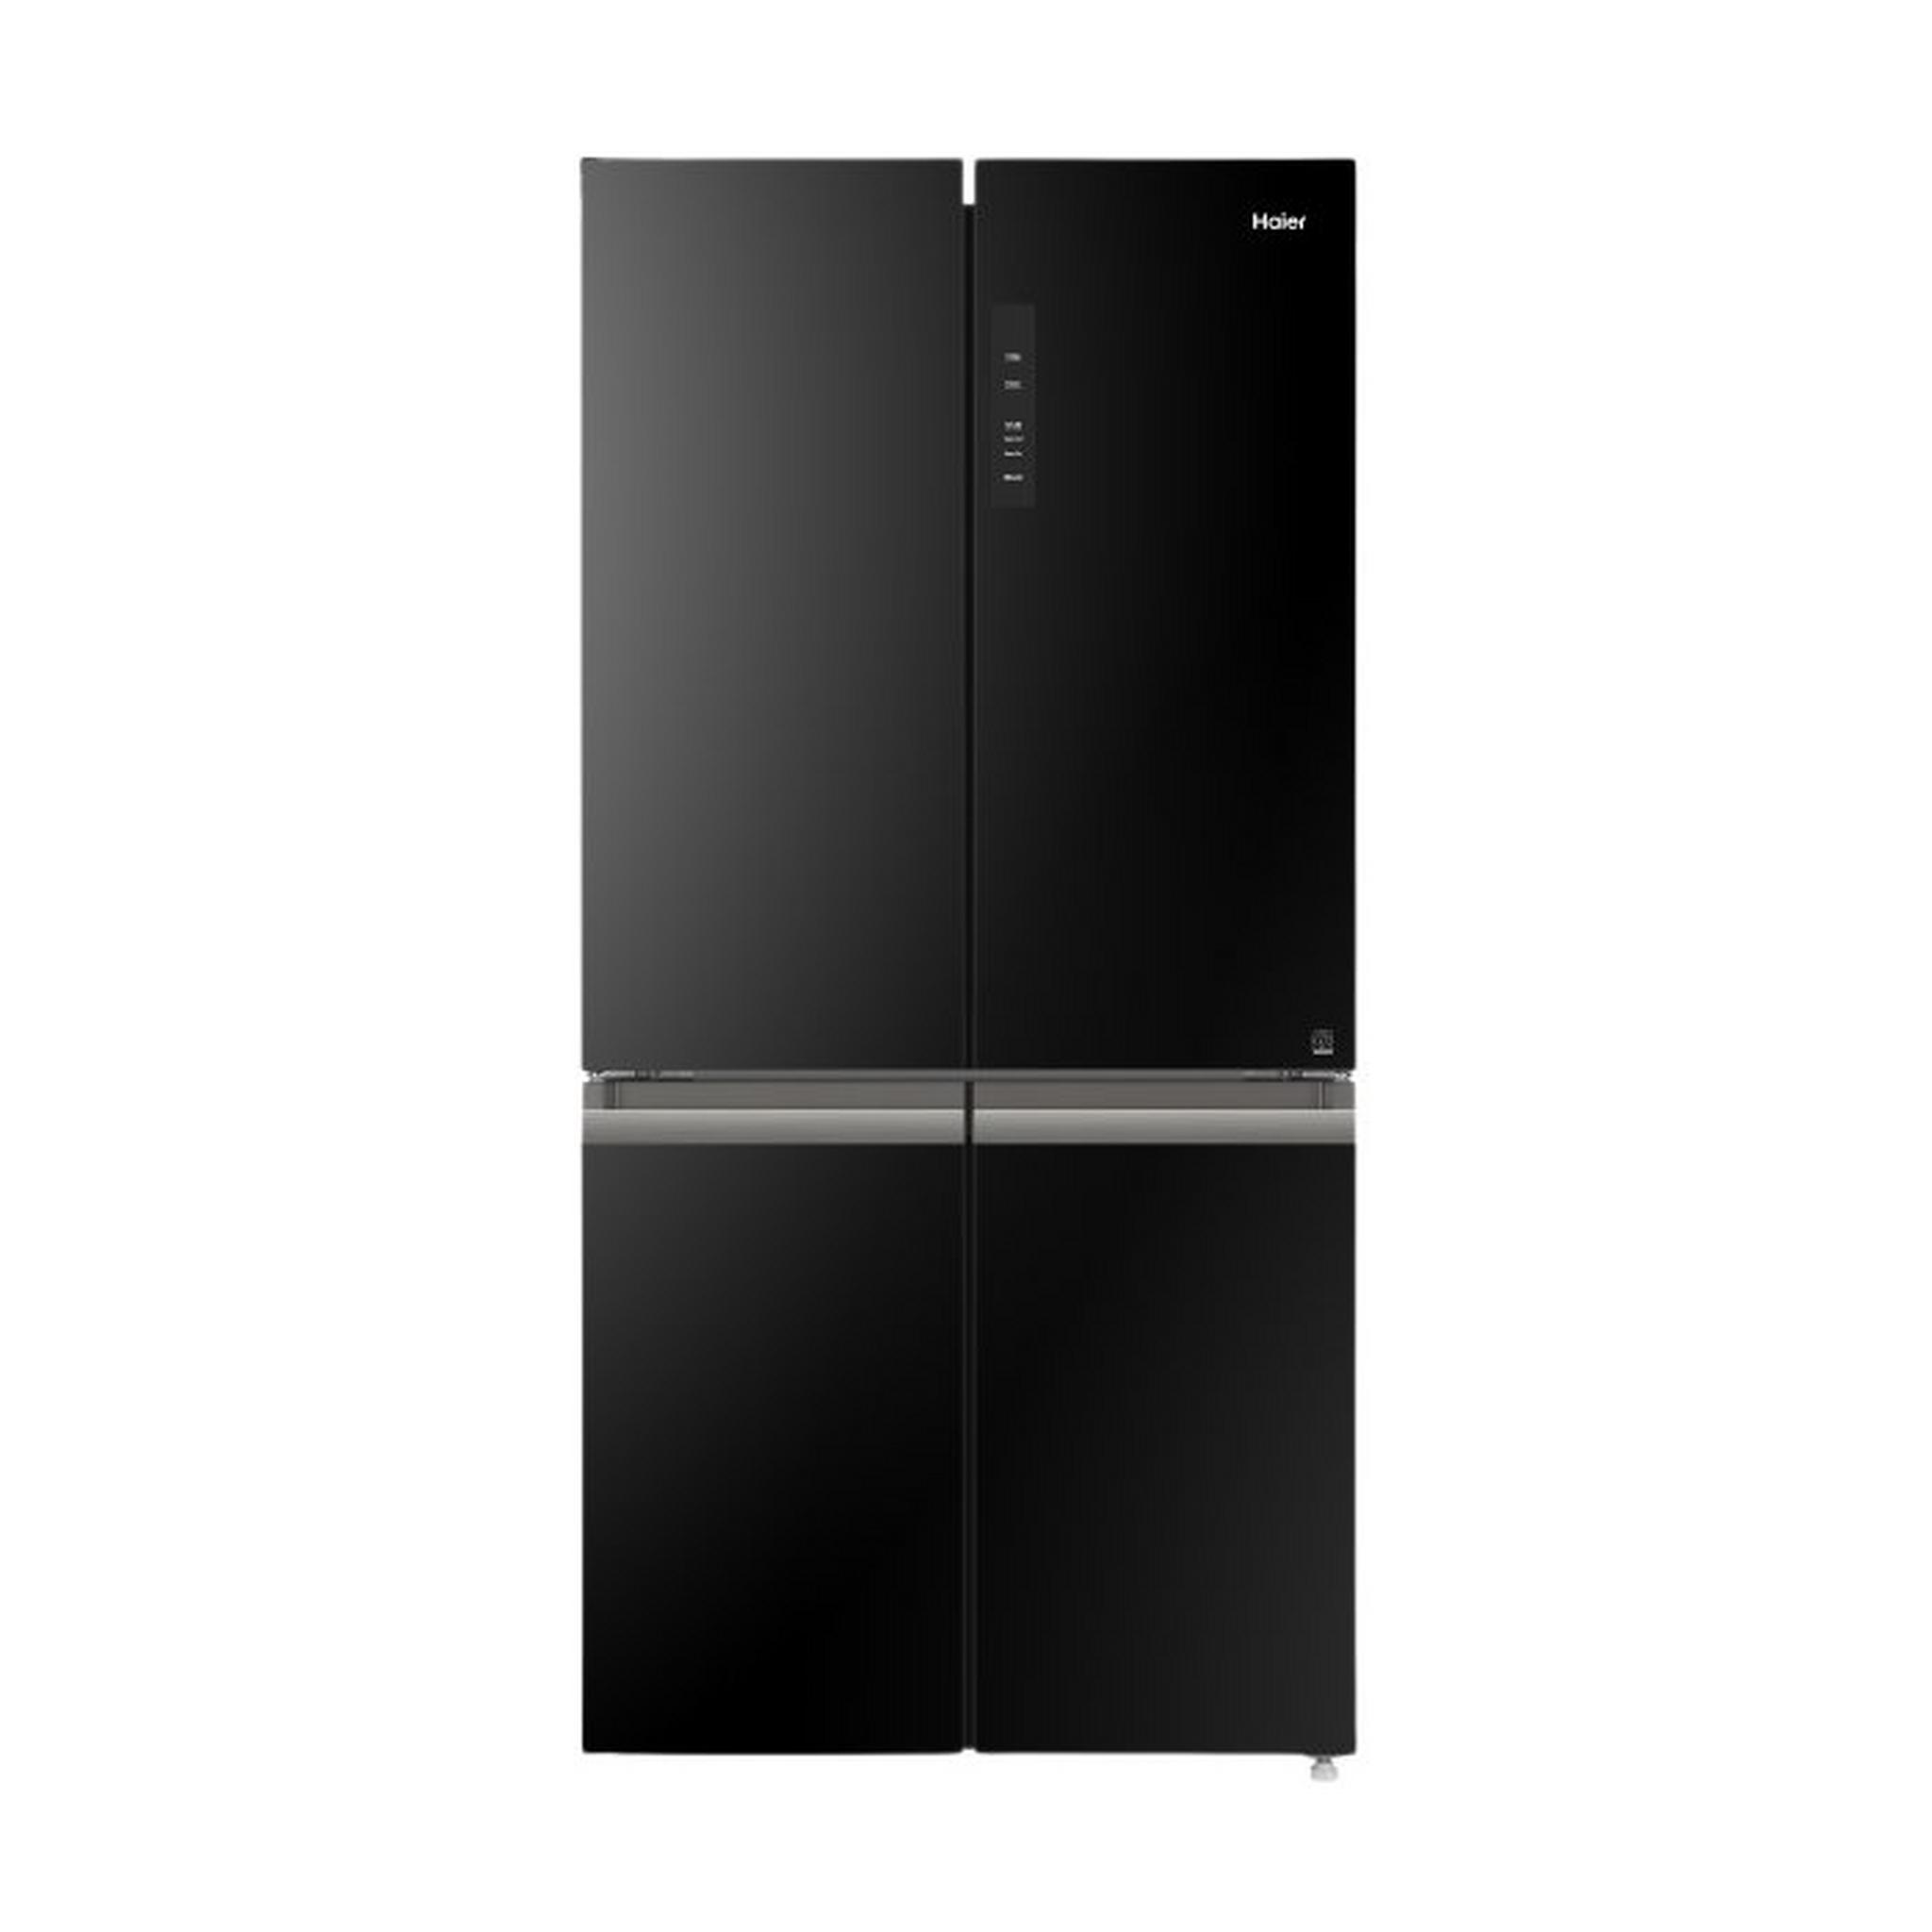 Haier 29 CFT 4 Door Refrigerator (HRF-820BG) - Black